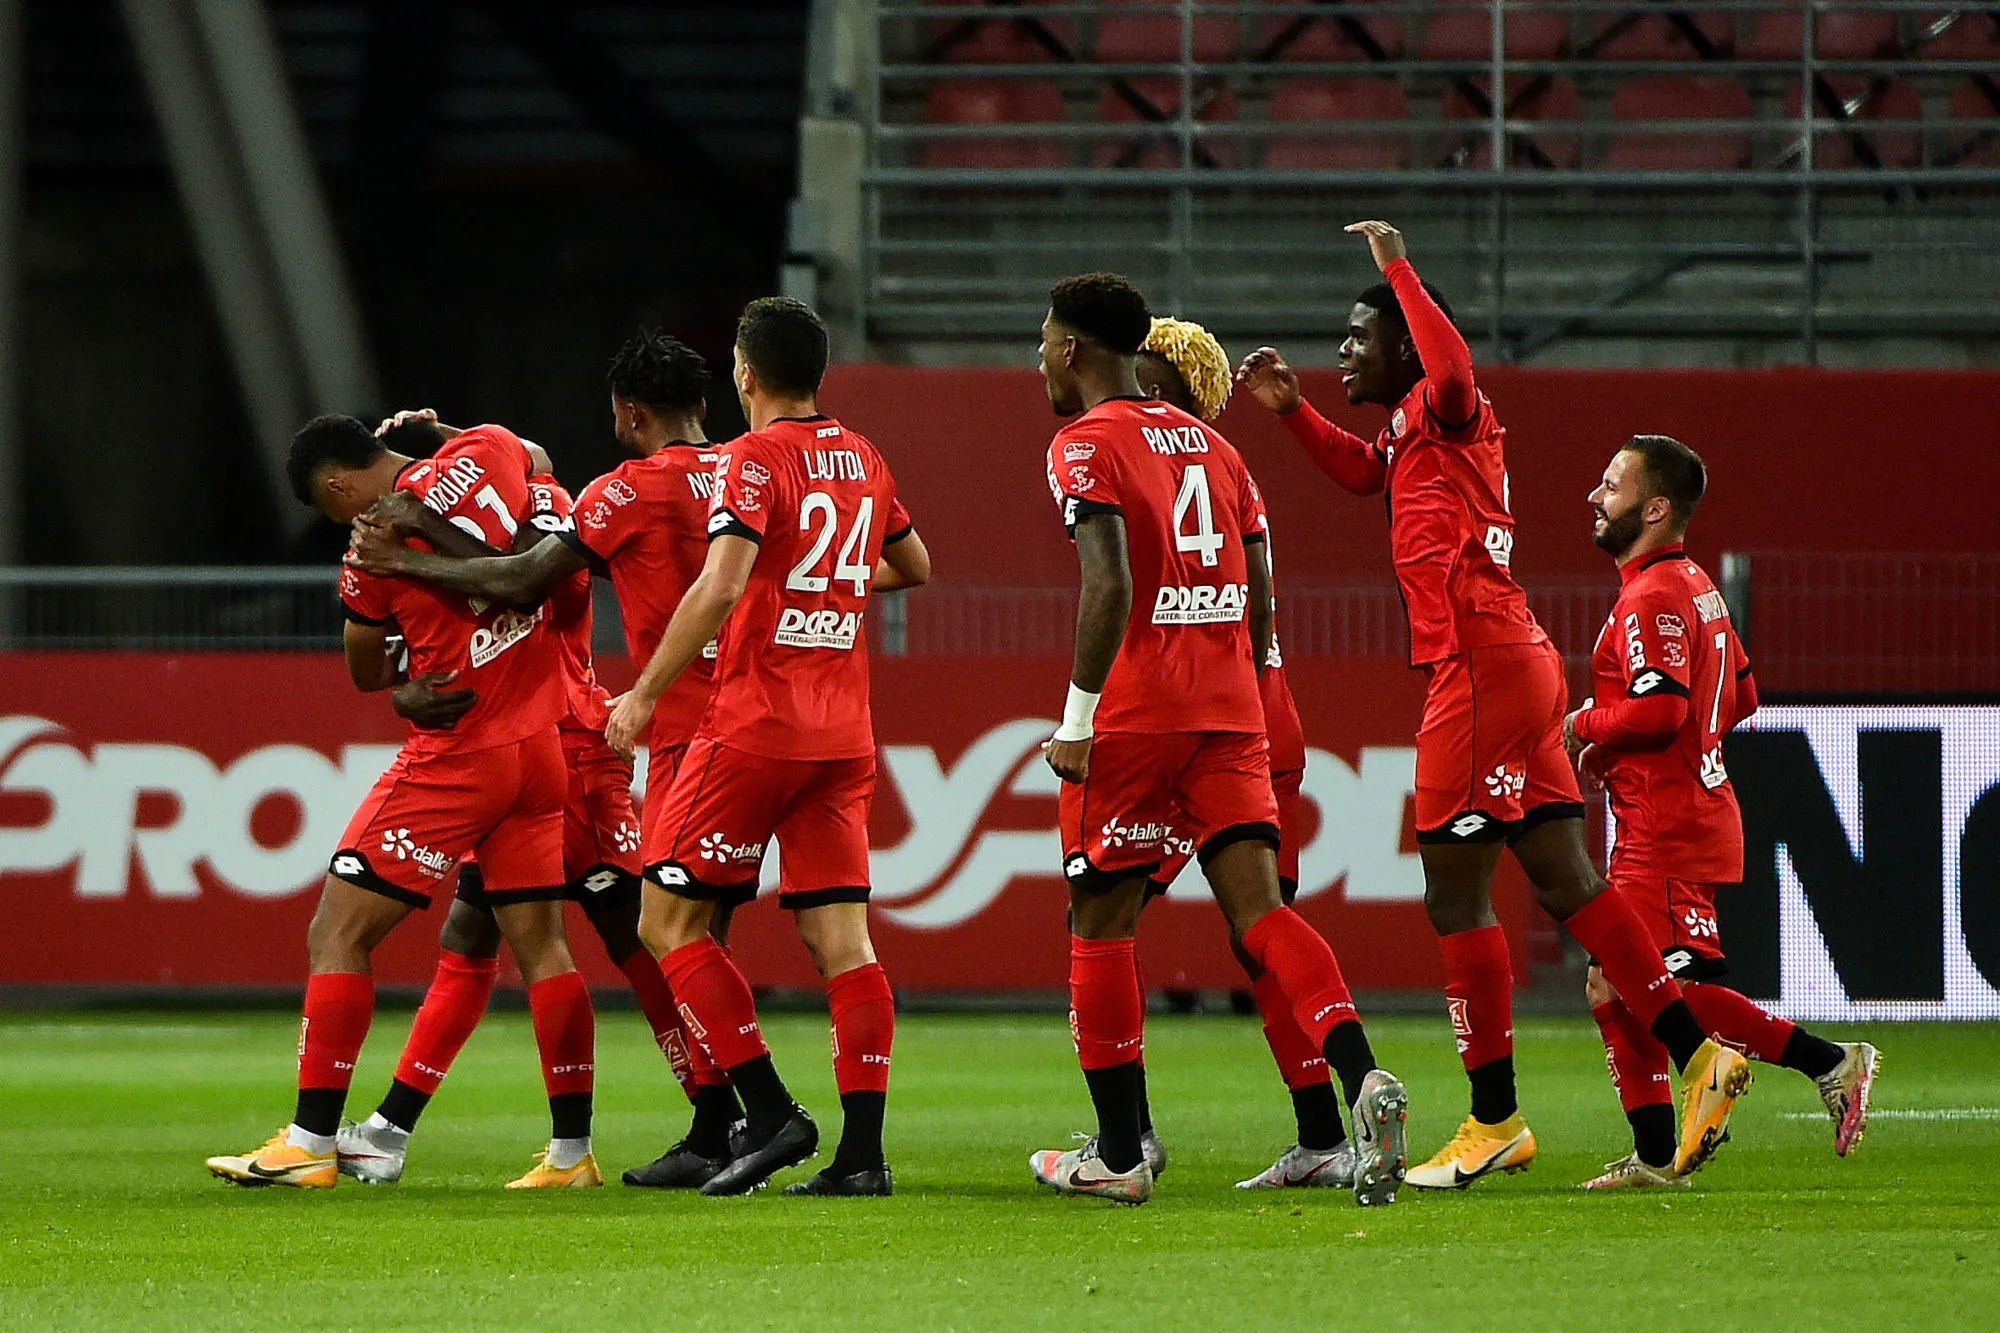 Pronostic Lorient Dijon : Analyse, cotes et prono du match de Ligue 1